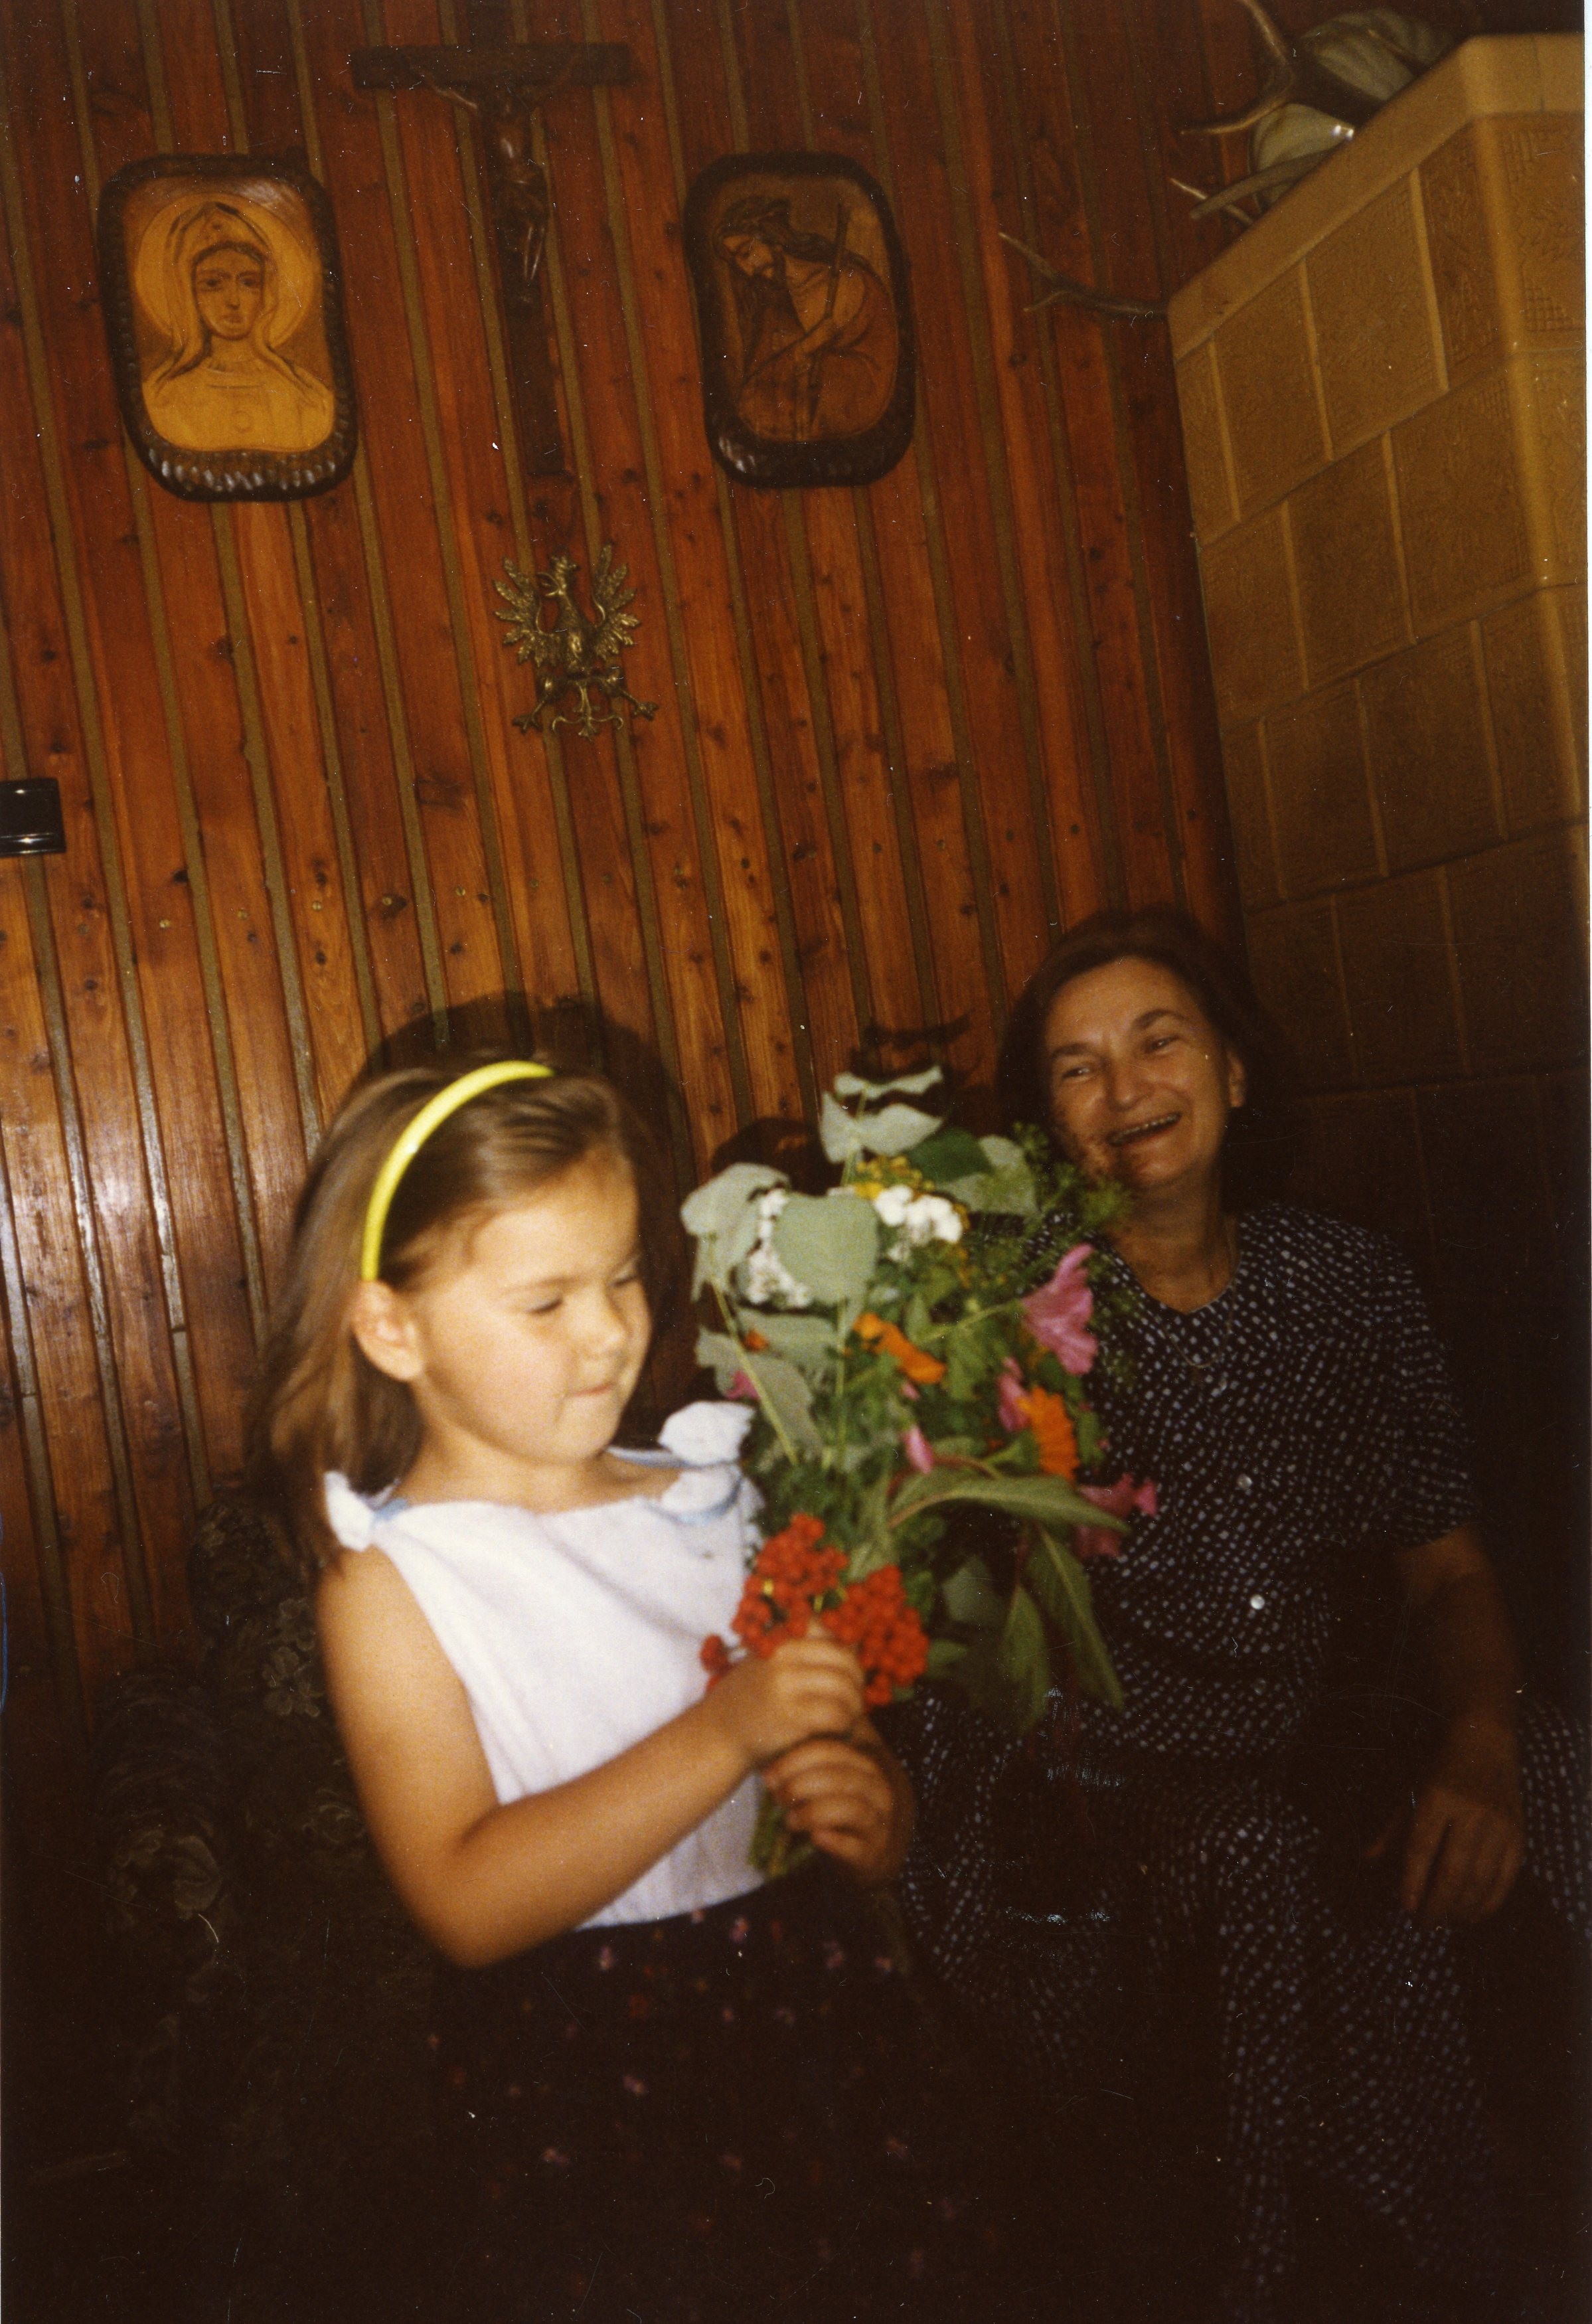 Babcia i mała dziewczynka. Dziewczynka w rękach trzyma bukiet kwiatów